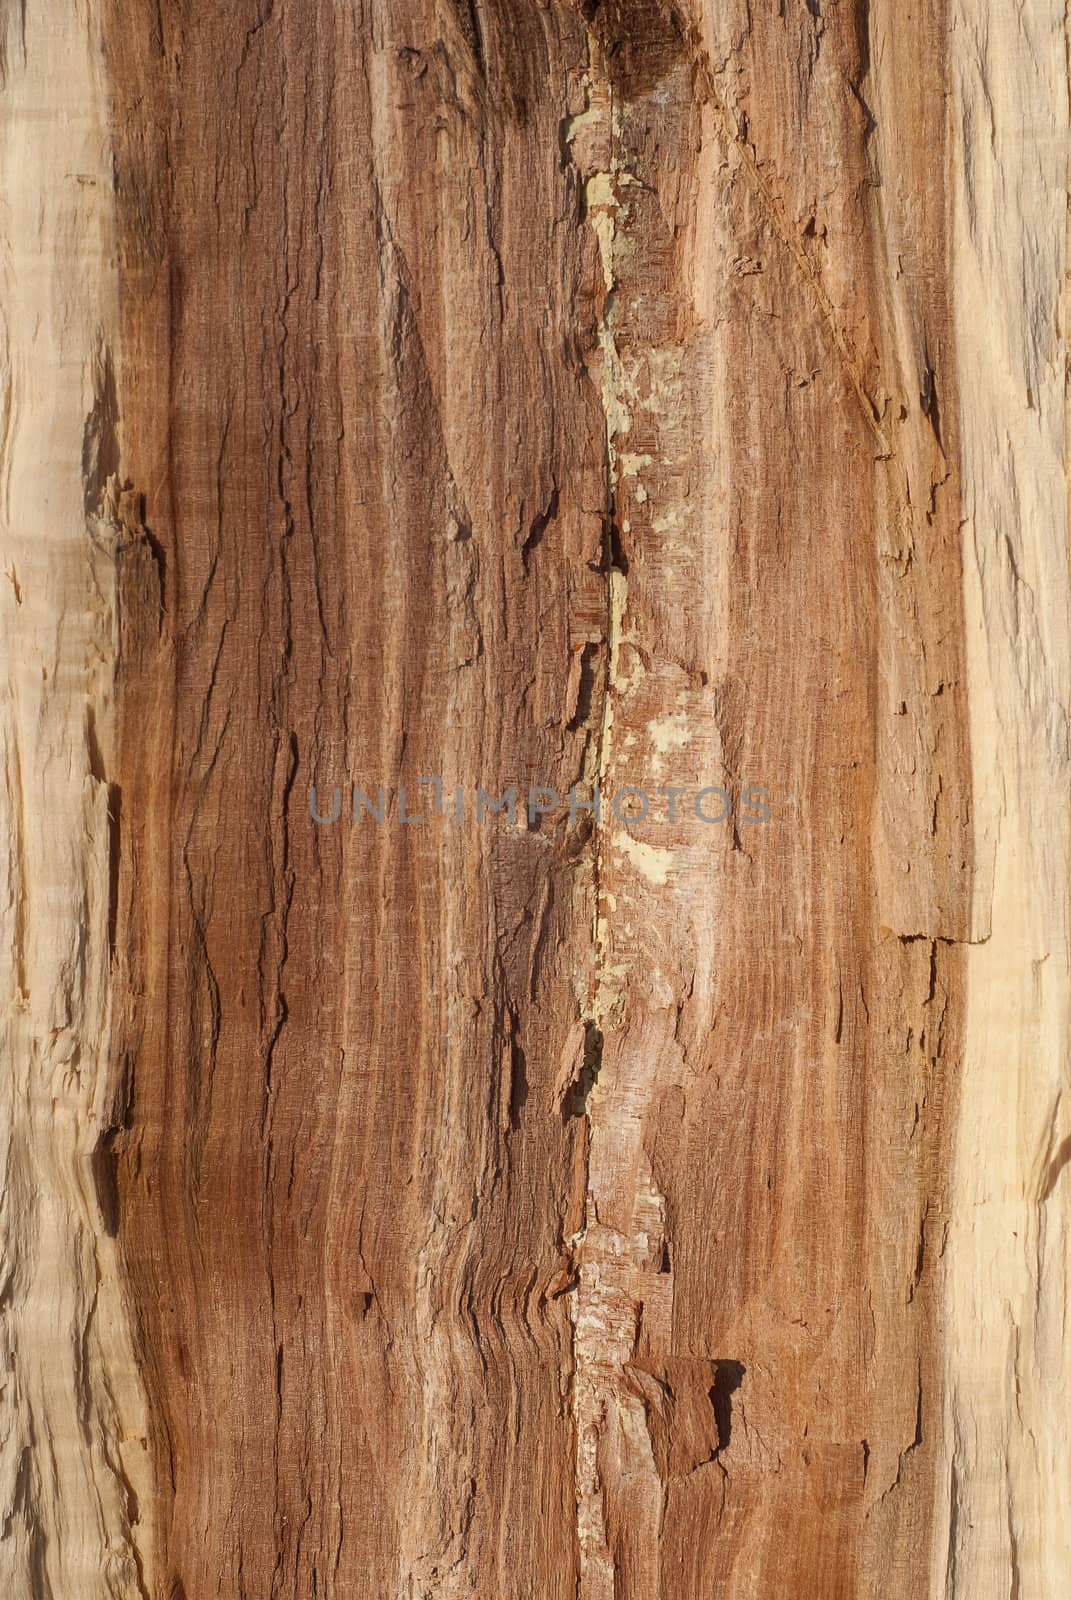 Oak log core by varbenov